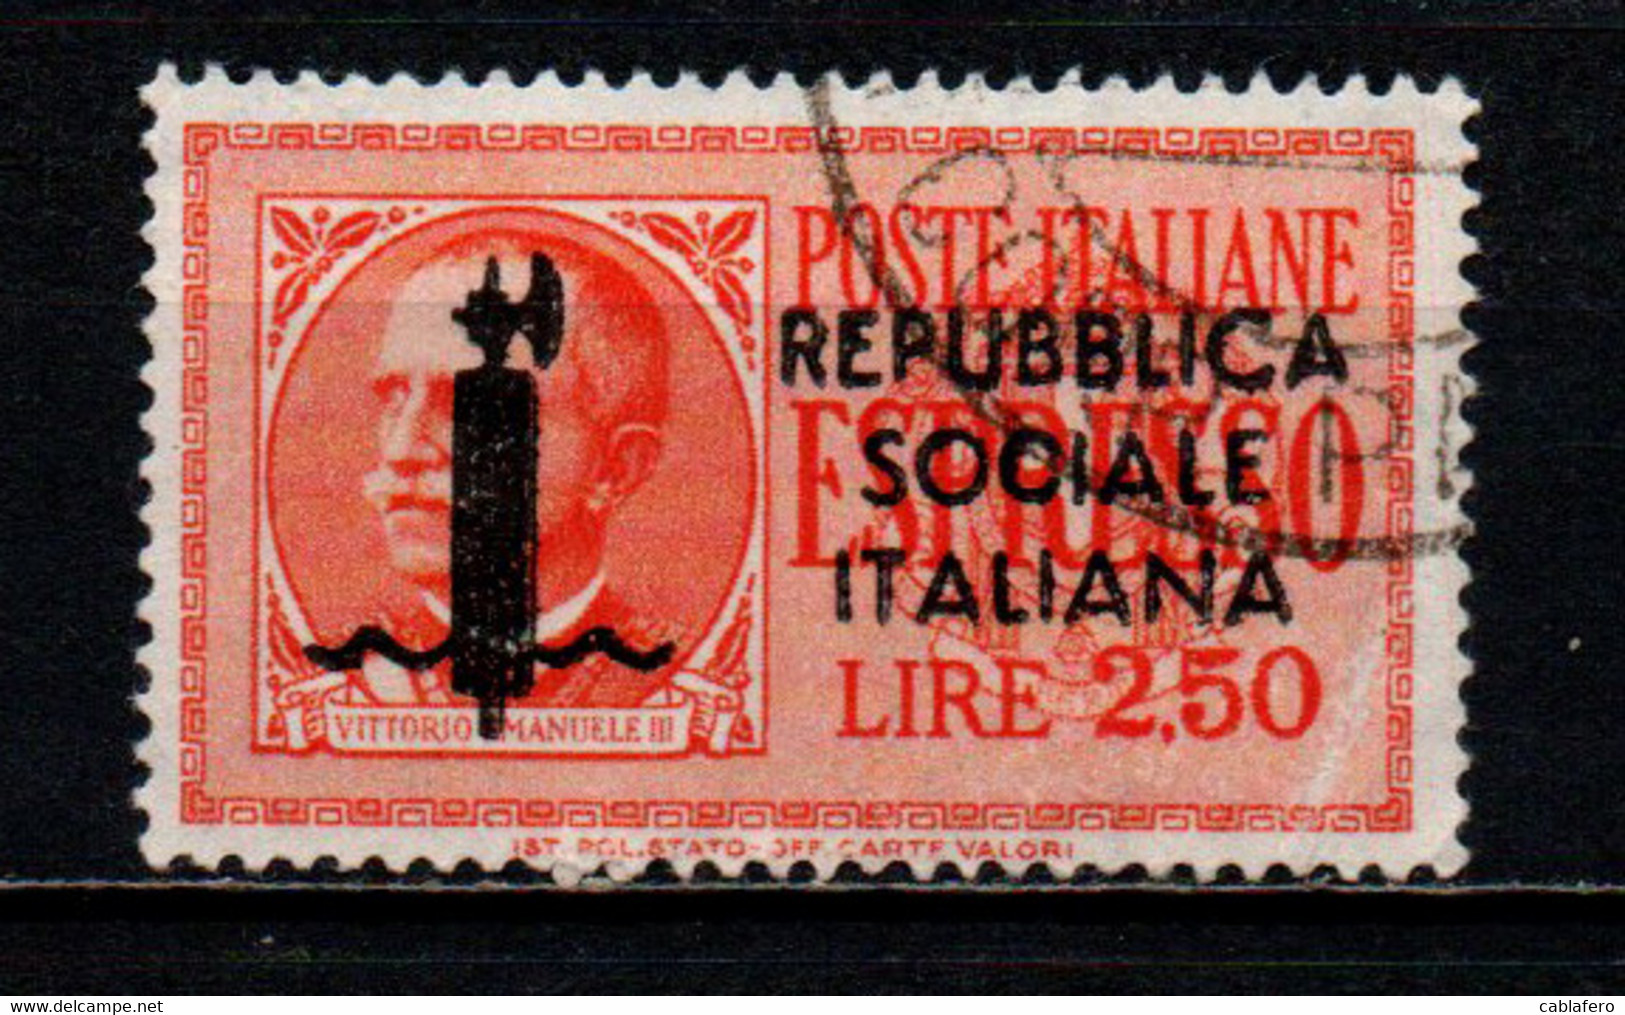 ITALIA RSI - 1944 - EFFIGIE DEL RE VITTORIO EMANULE III - FRANCOBOLLO CON DIFETTO - USATO - Eilsendung (Eilpost)